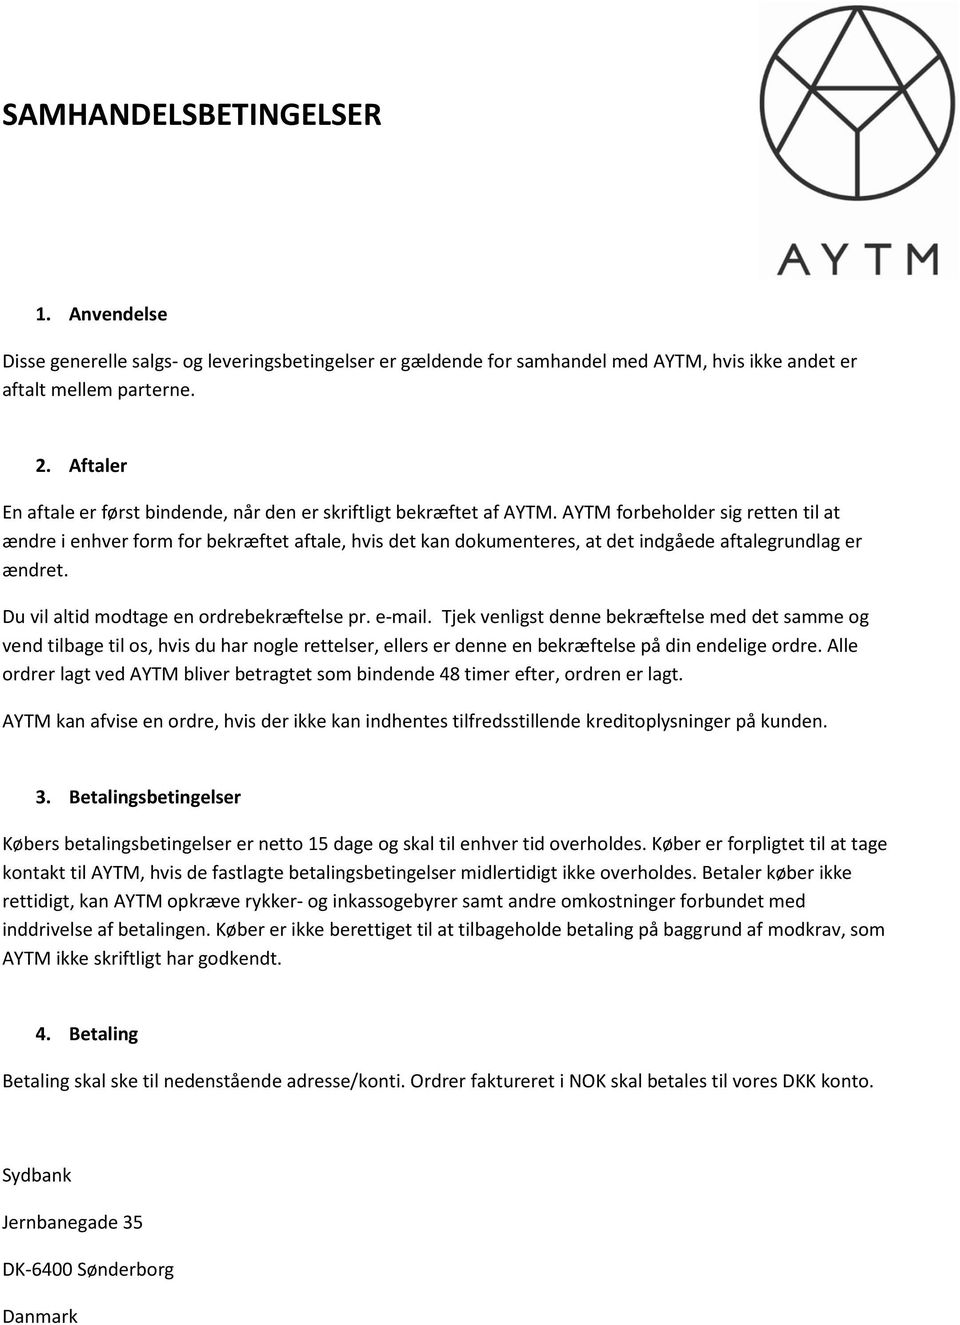 AYTM forbeholder sig retten til at ændre i enhver form for bekræftet aftale, hvis det kan dokumenteres, at det indgåede aftalegrundlag er ændret. Du vil altid modtage en ordrebekræftelse pr. e-mail.